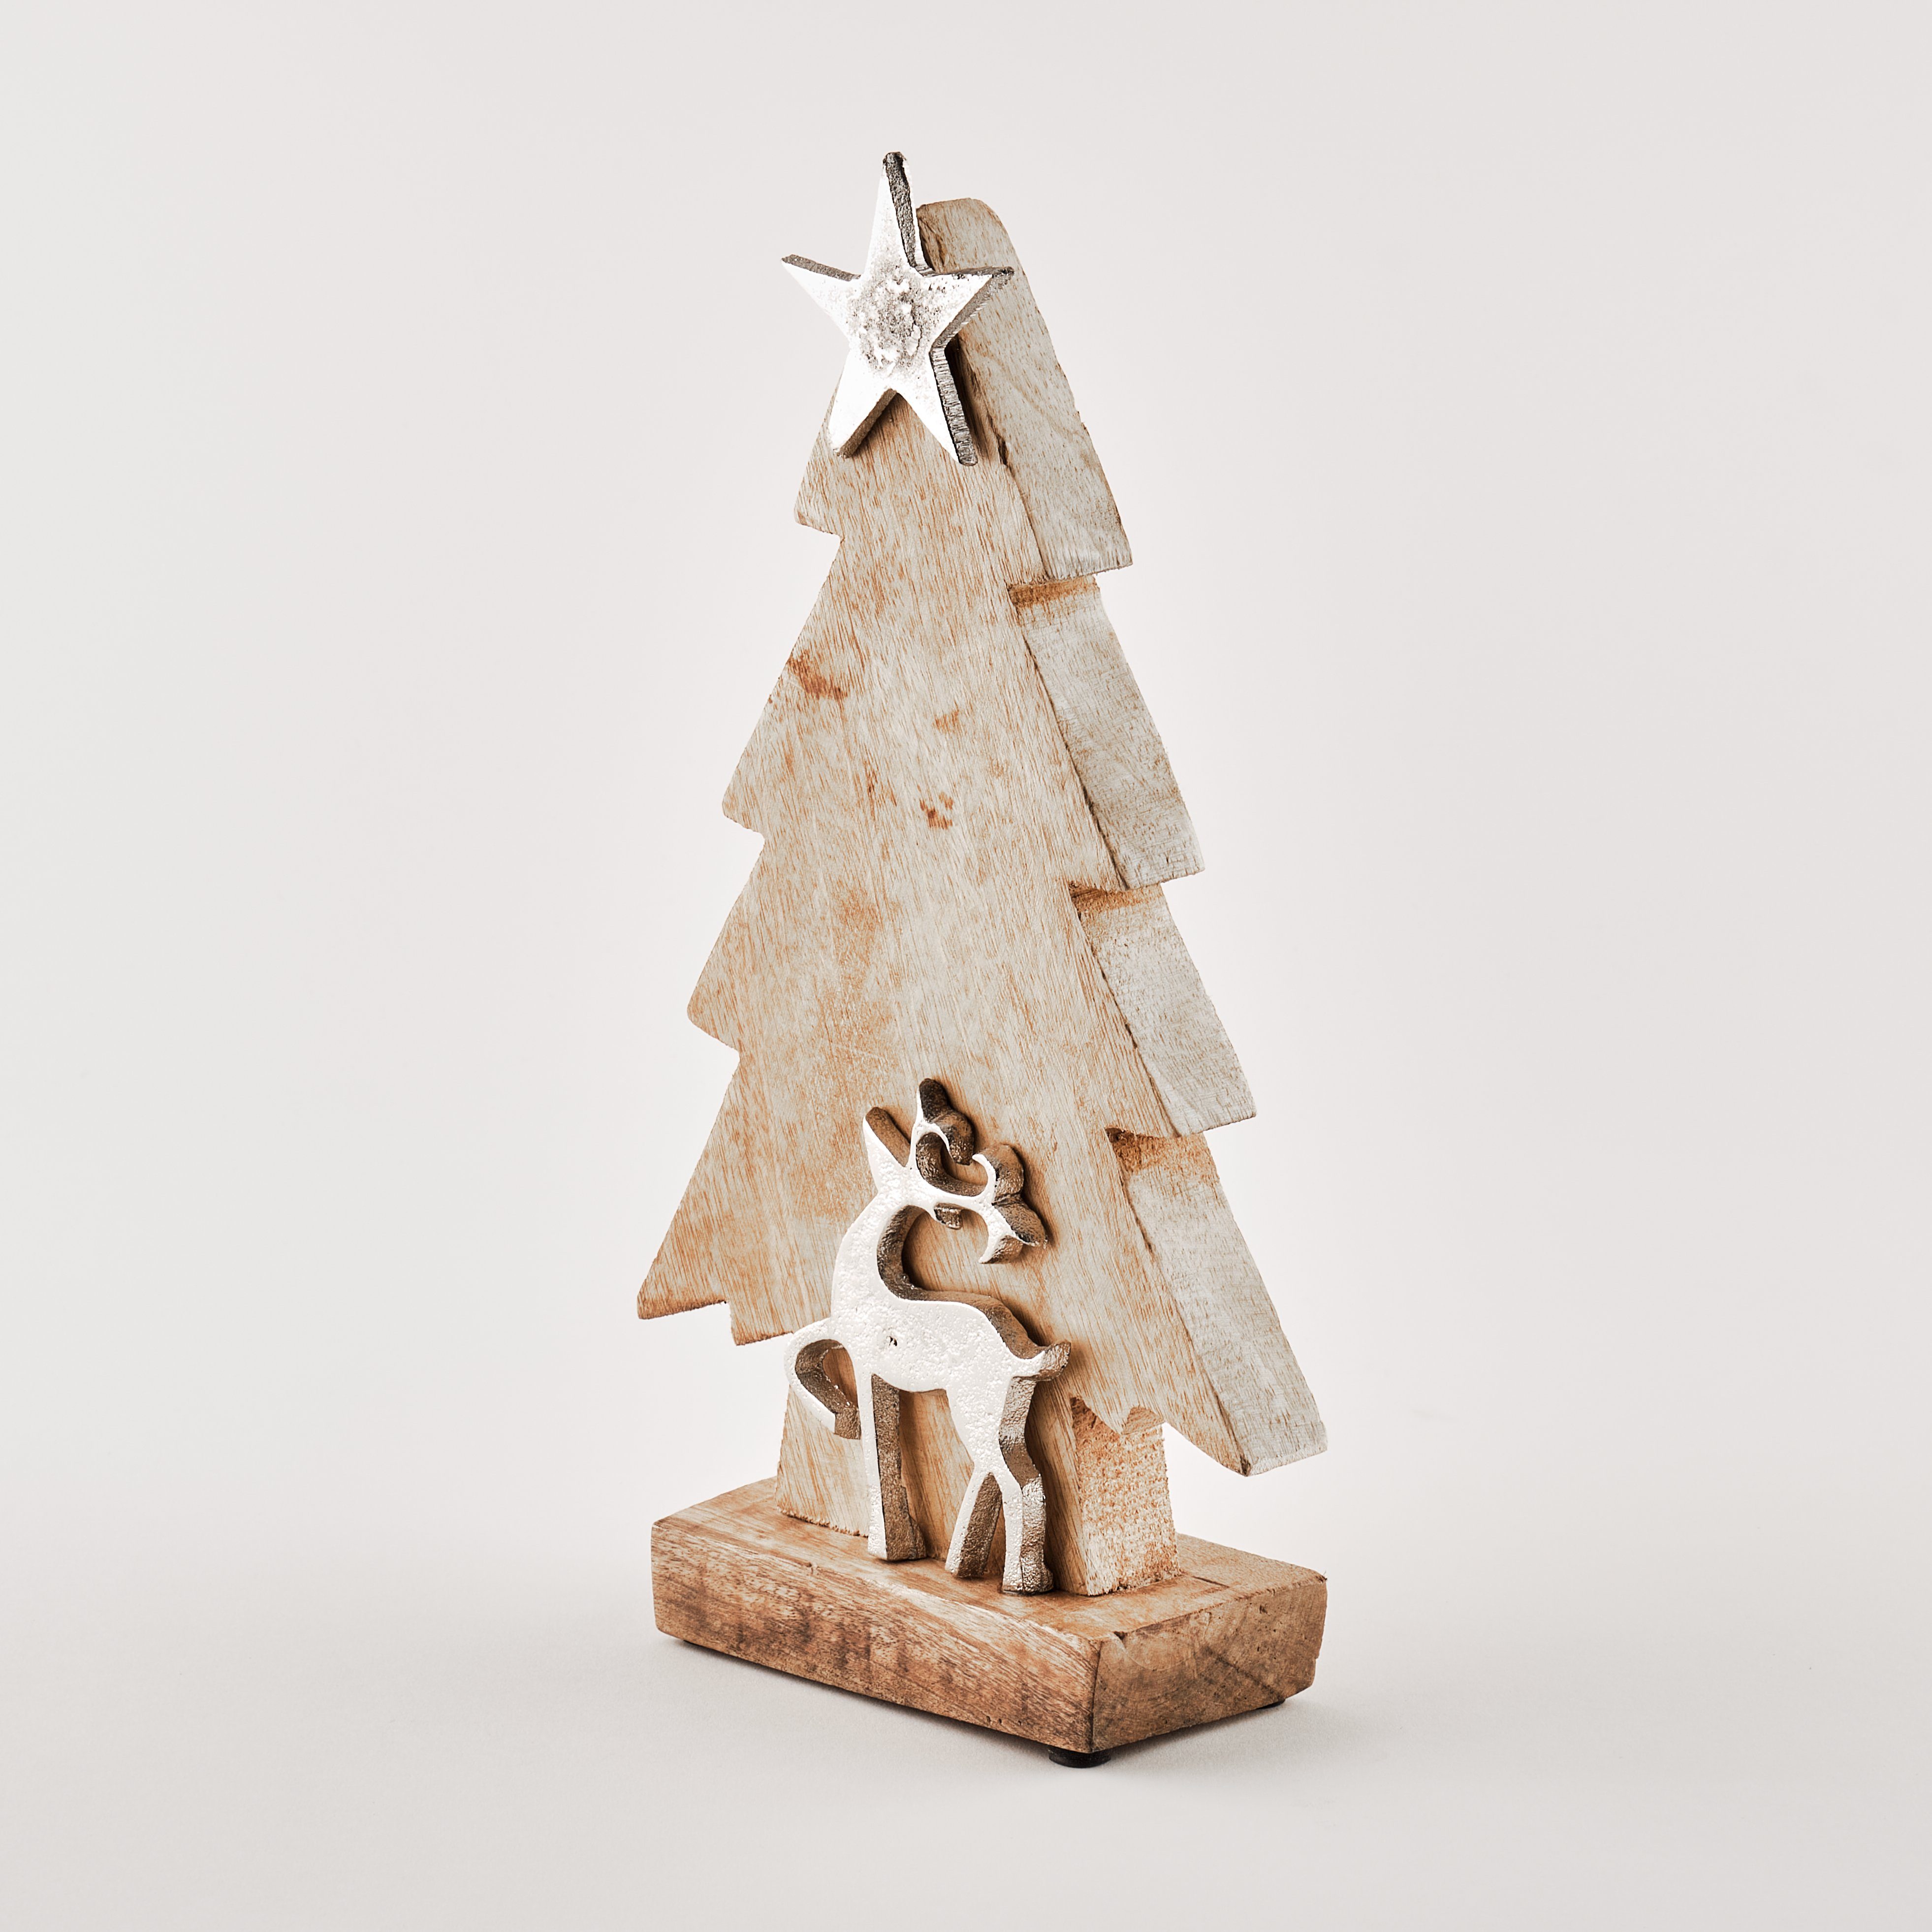 TOPCENT Weihnachtsfigur Tannenbaum aus Mangoholz mit Rentier und Stern, H 32 cm, aus Mangoholz | Dekofiguren